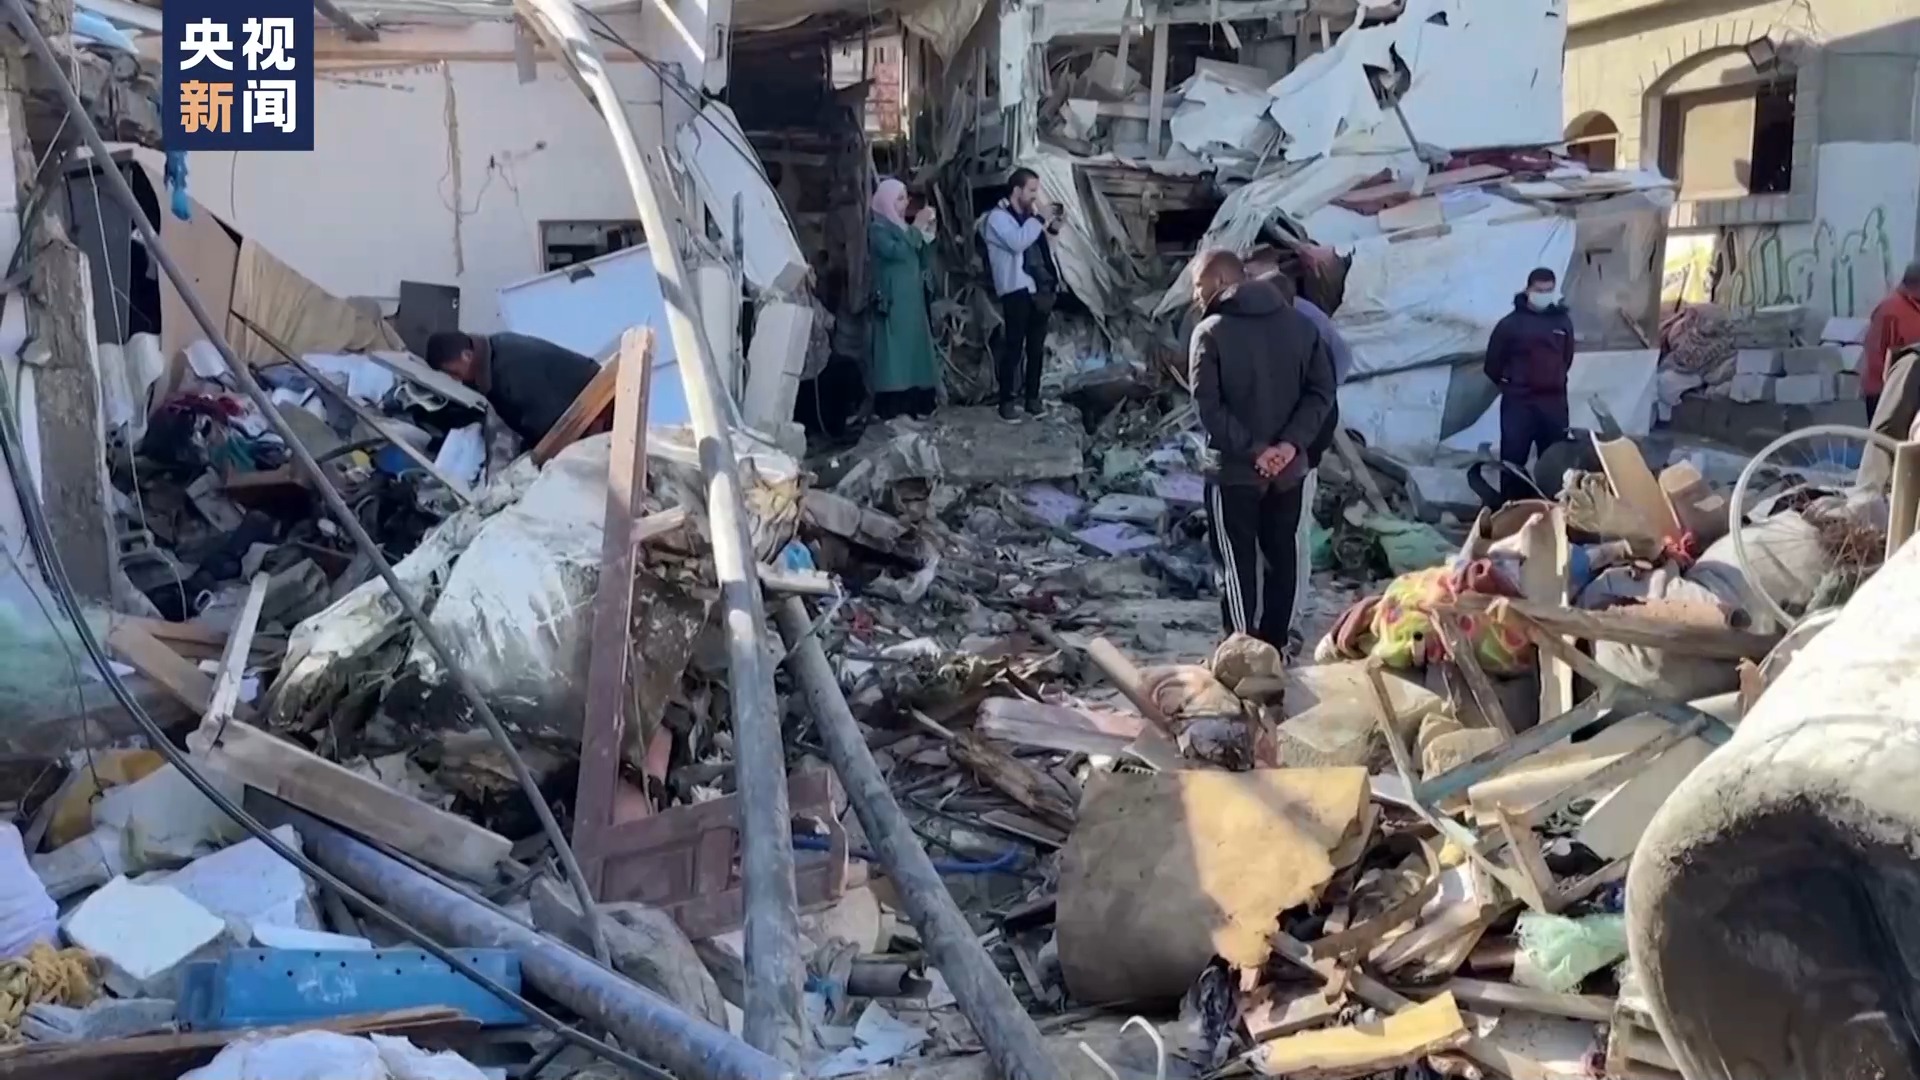 加沙地带援助物资空投失误致多人死伤 民众呼吁不要物资要停止杀戮